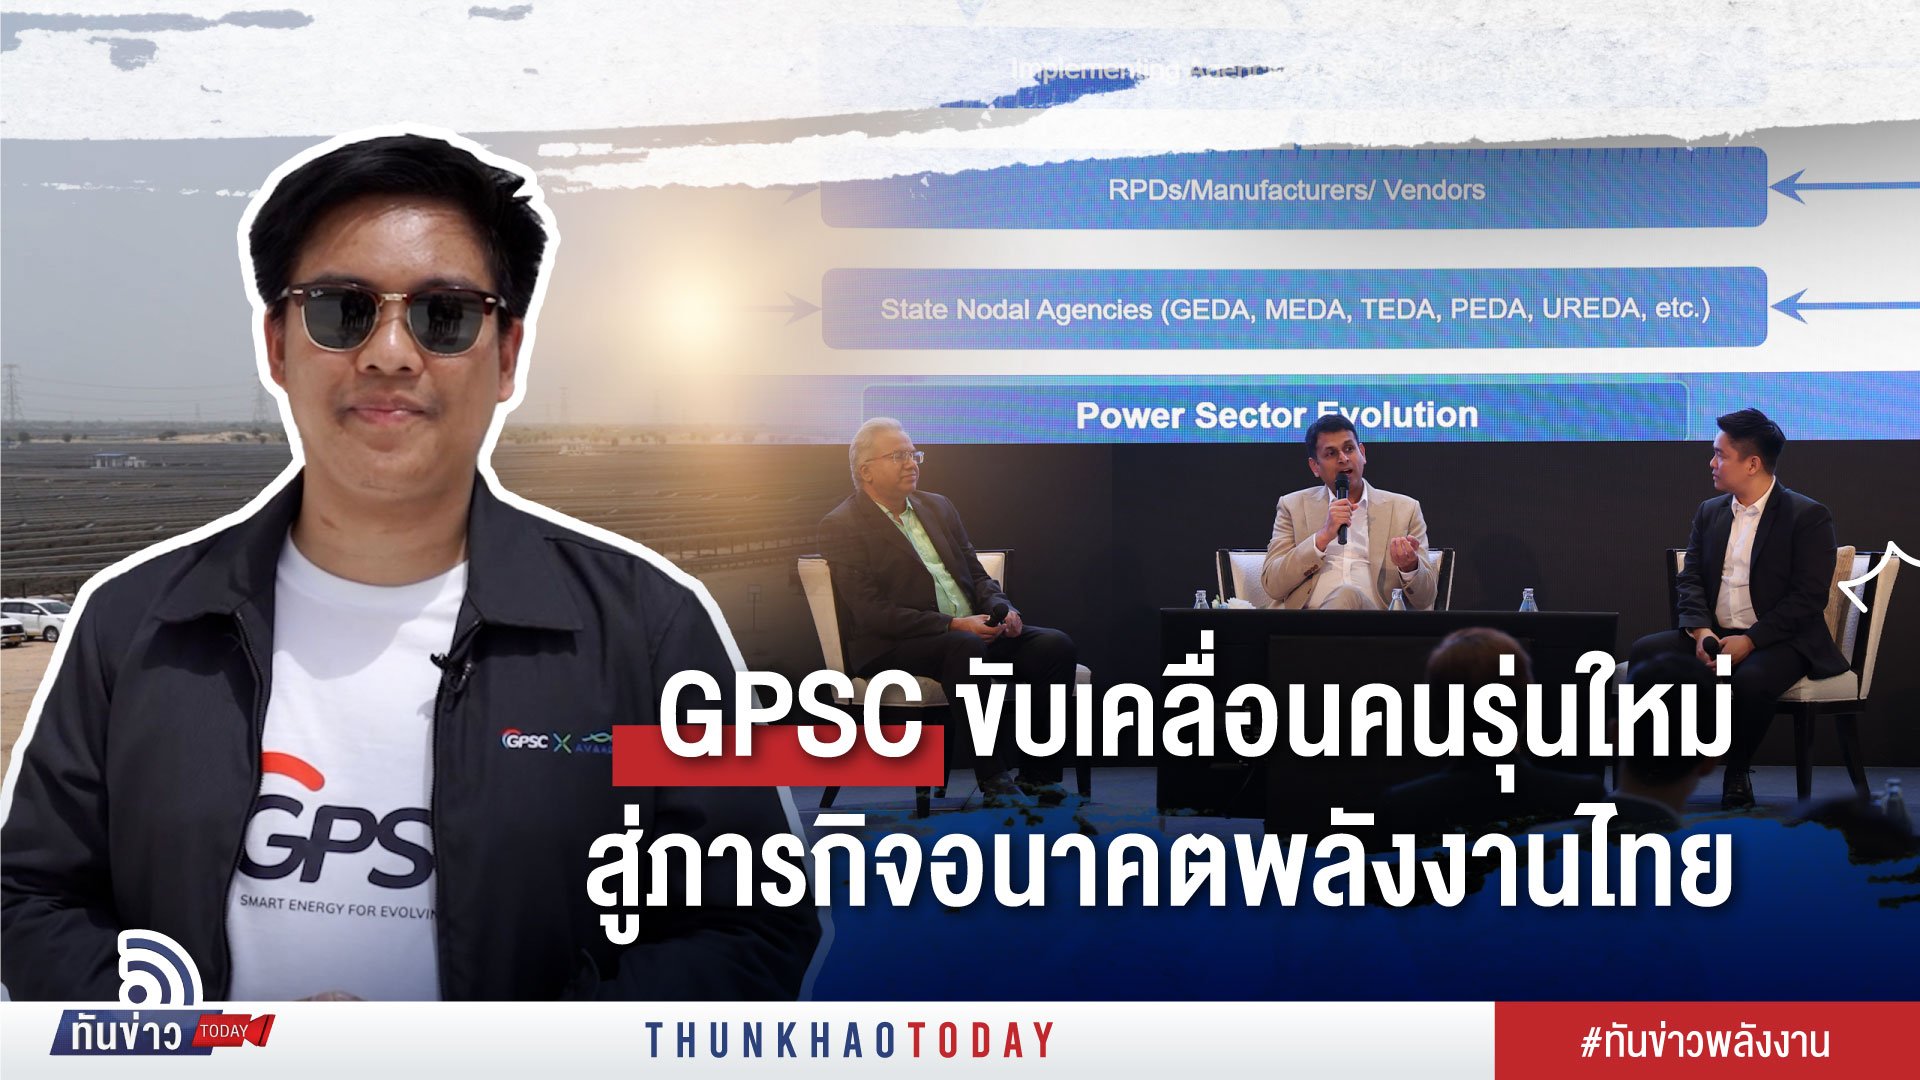 GPSC ขับเคลื่อนคนรุ่นใหม่ สู่ภารกิจอนาคตพลังงานไทย